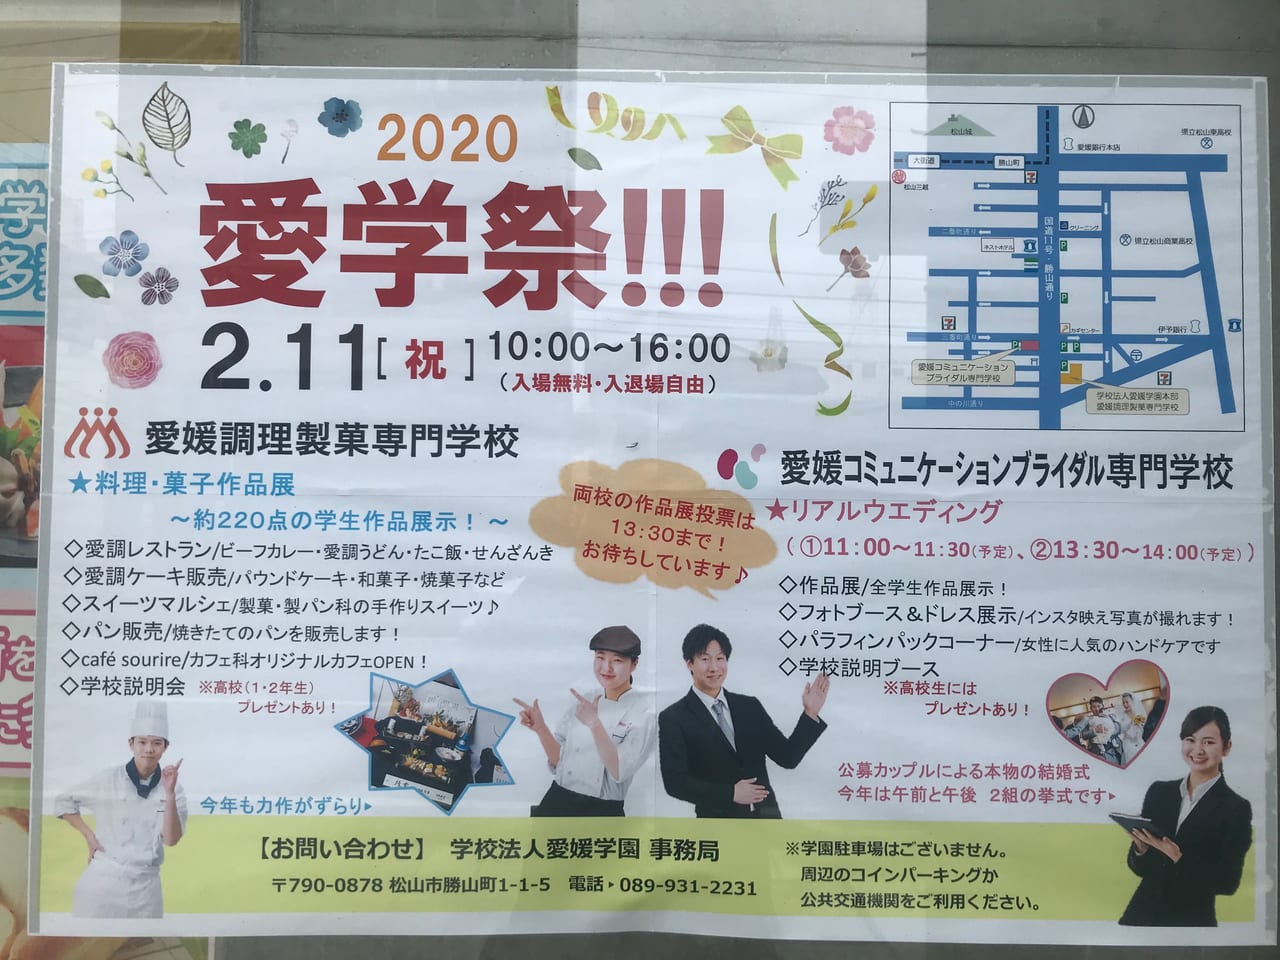 松山市 年2月11日 愛学祭開催 調理 製菓のプロを目指す学生さんの作品 おもてなし 本物の結婚式も 号外net 松山市 中予地方